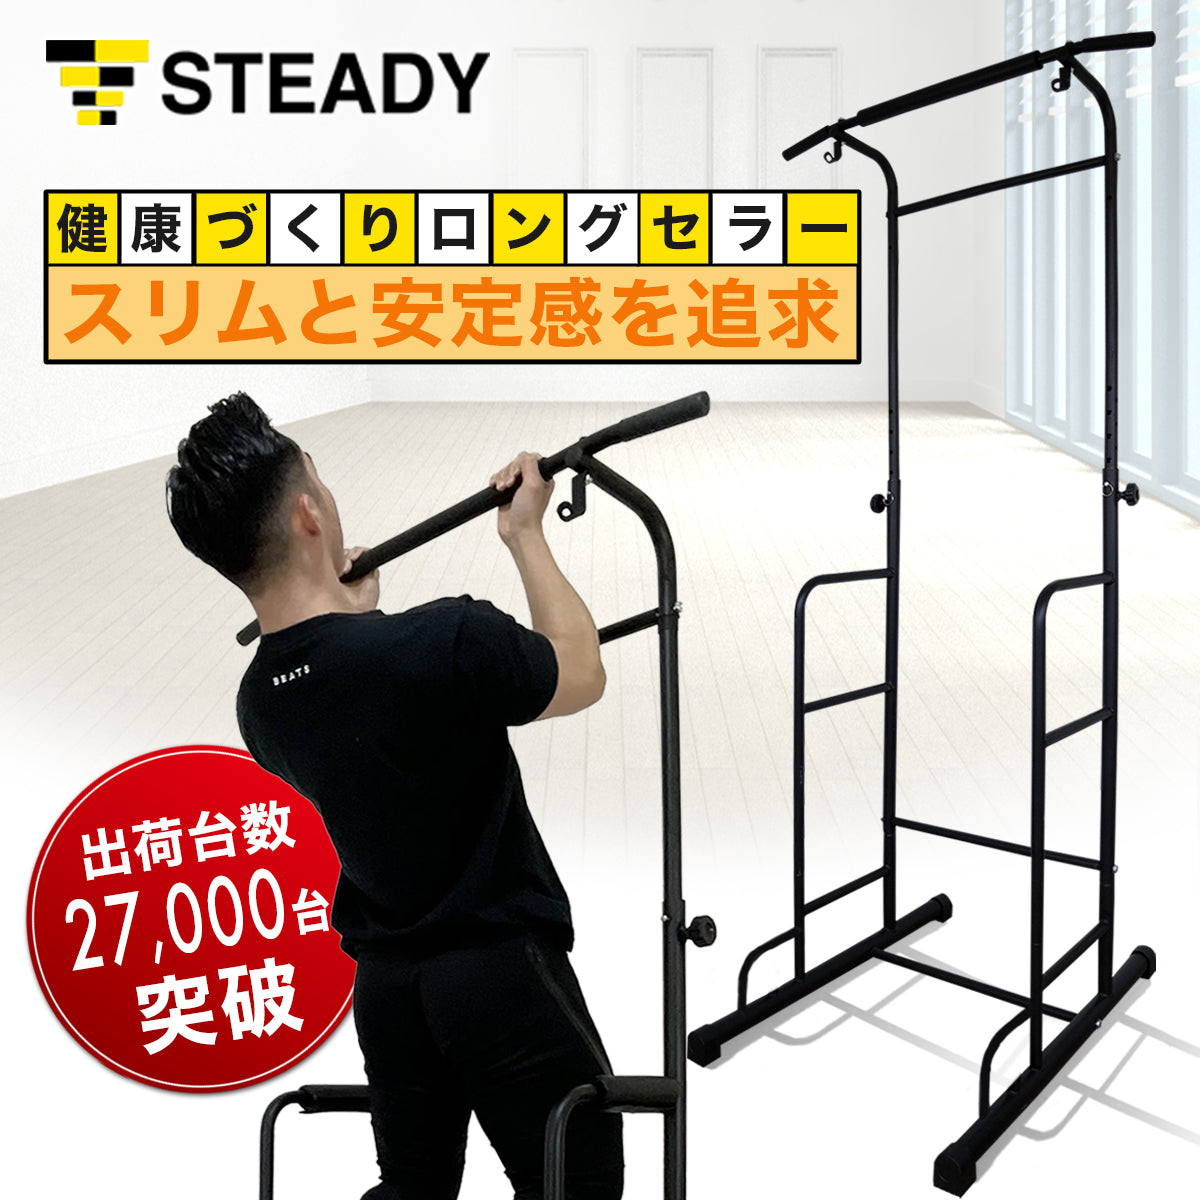 STEADY 懸垂マシン ディップススタンド その他 - トレーニング用品